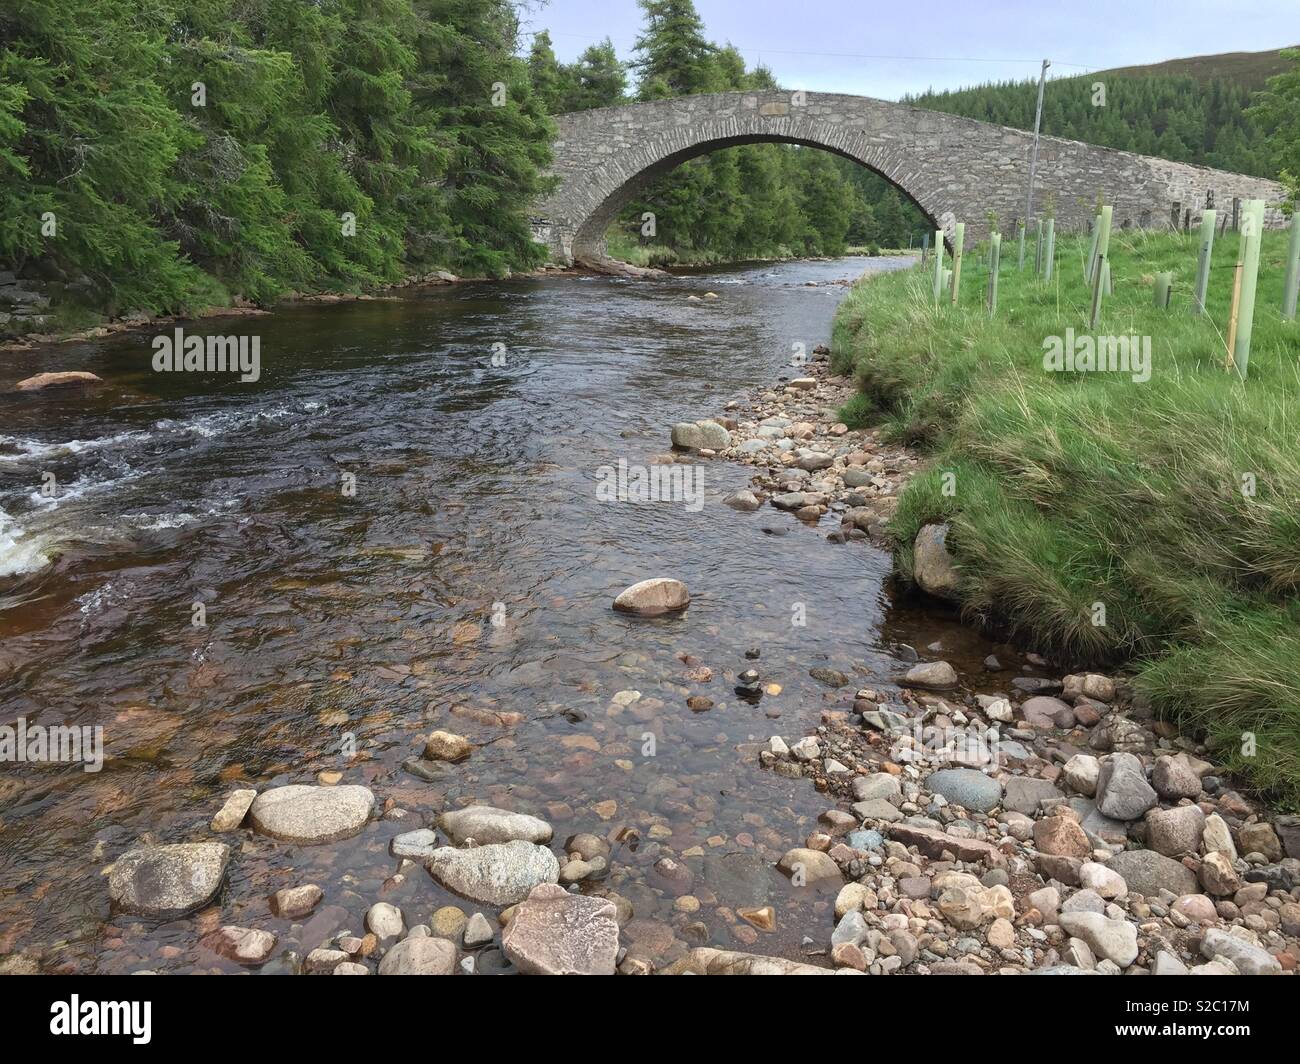 Traditional stone bridge over small river in Scotland Stock Photo